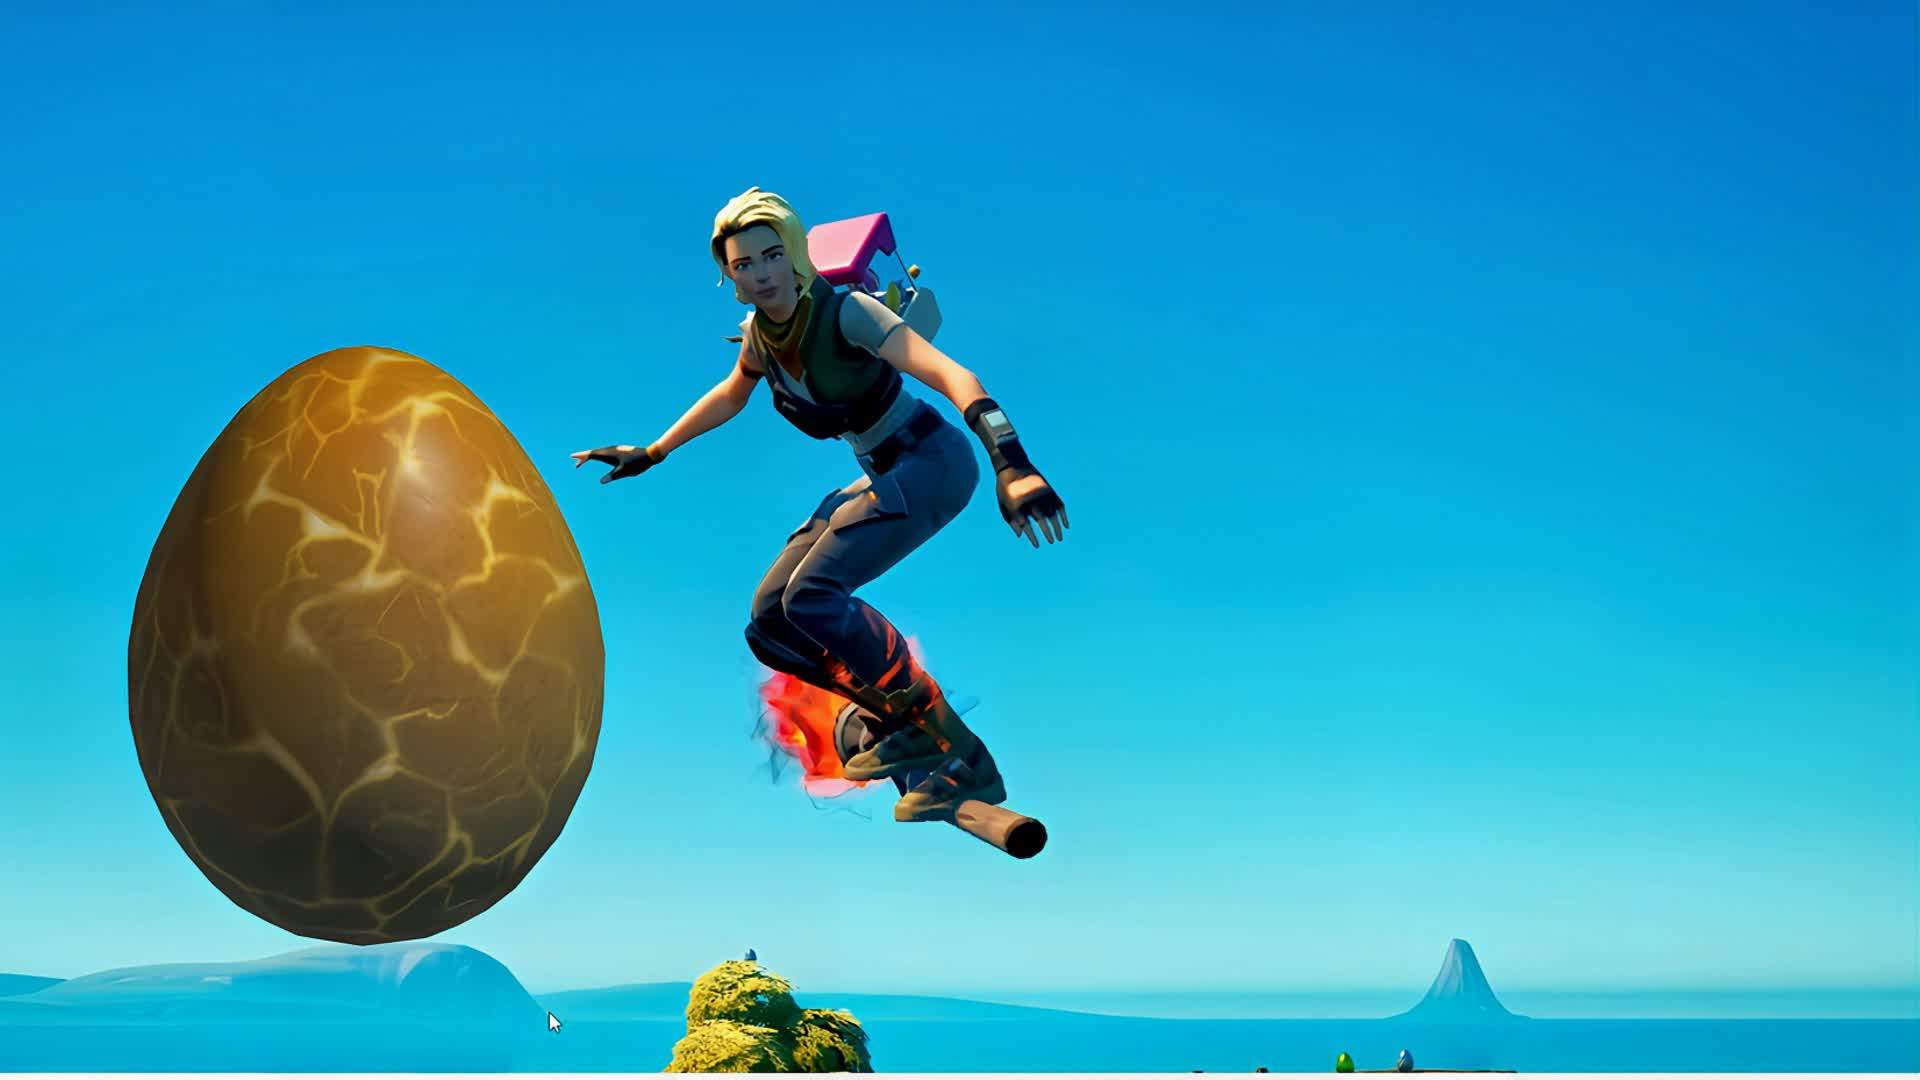 The Major's Easter Egg Brawl